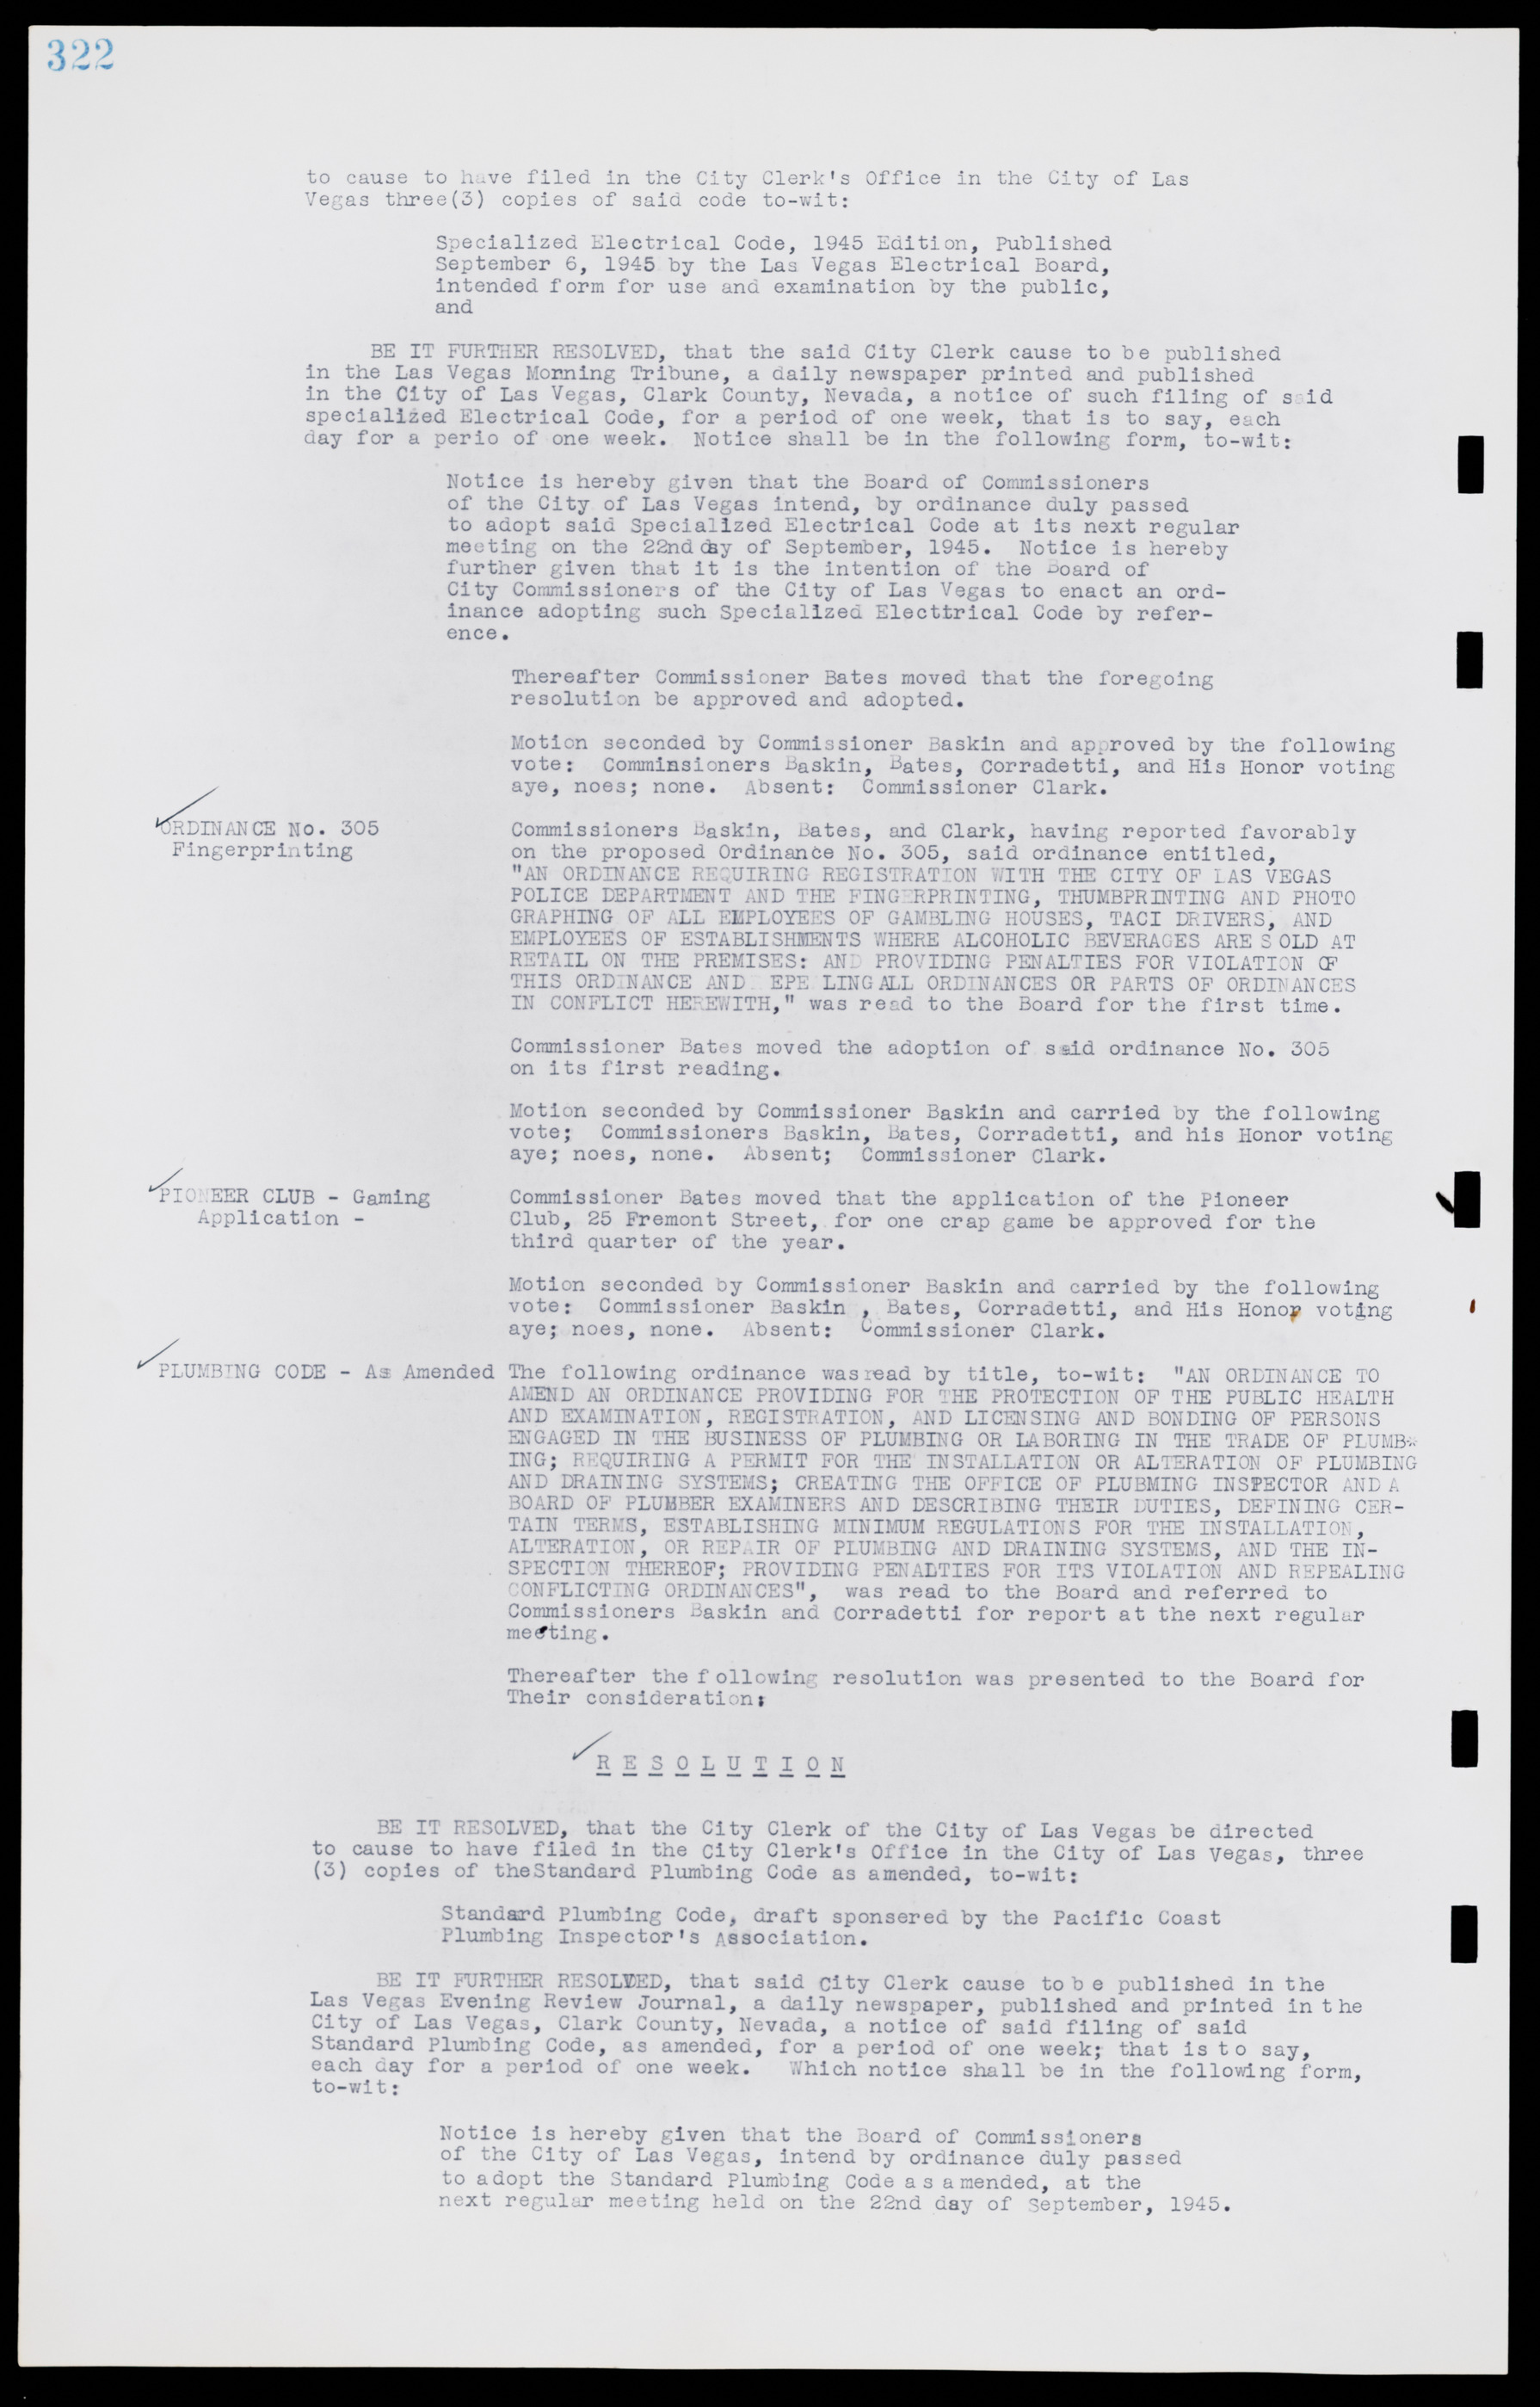 Las Vegas City Commission Minutes, August 11, 1942 to December 30, 1946, lvc000005-346